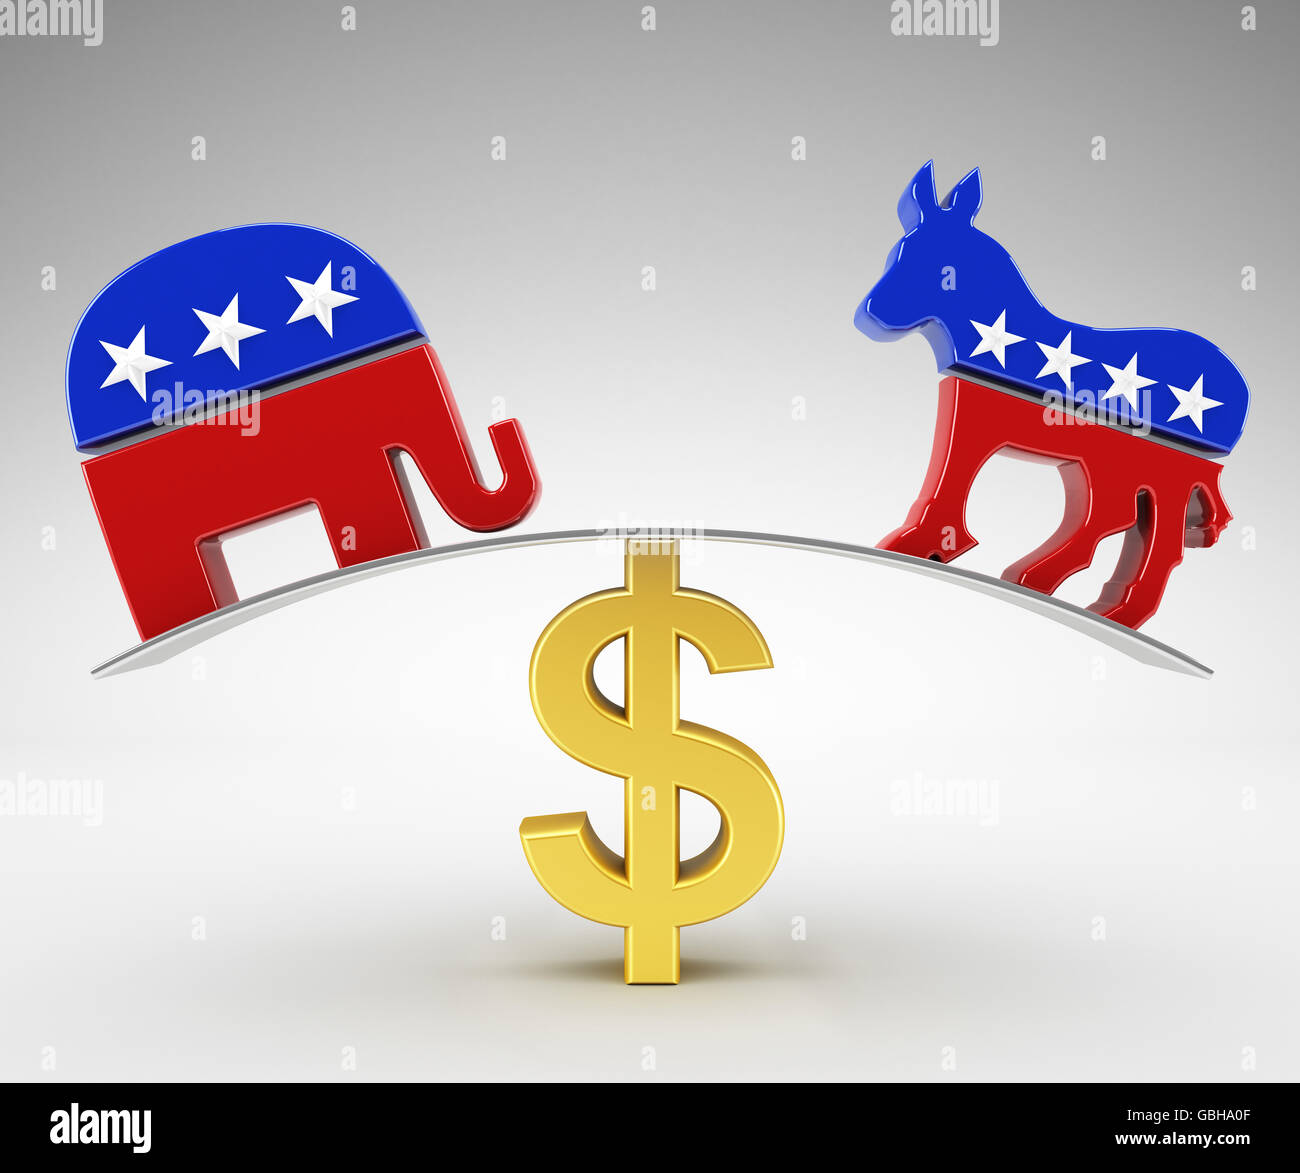 Politics and money Stock Photo